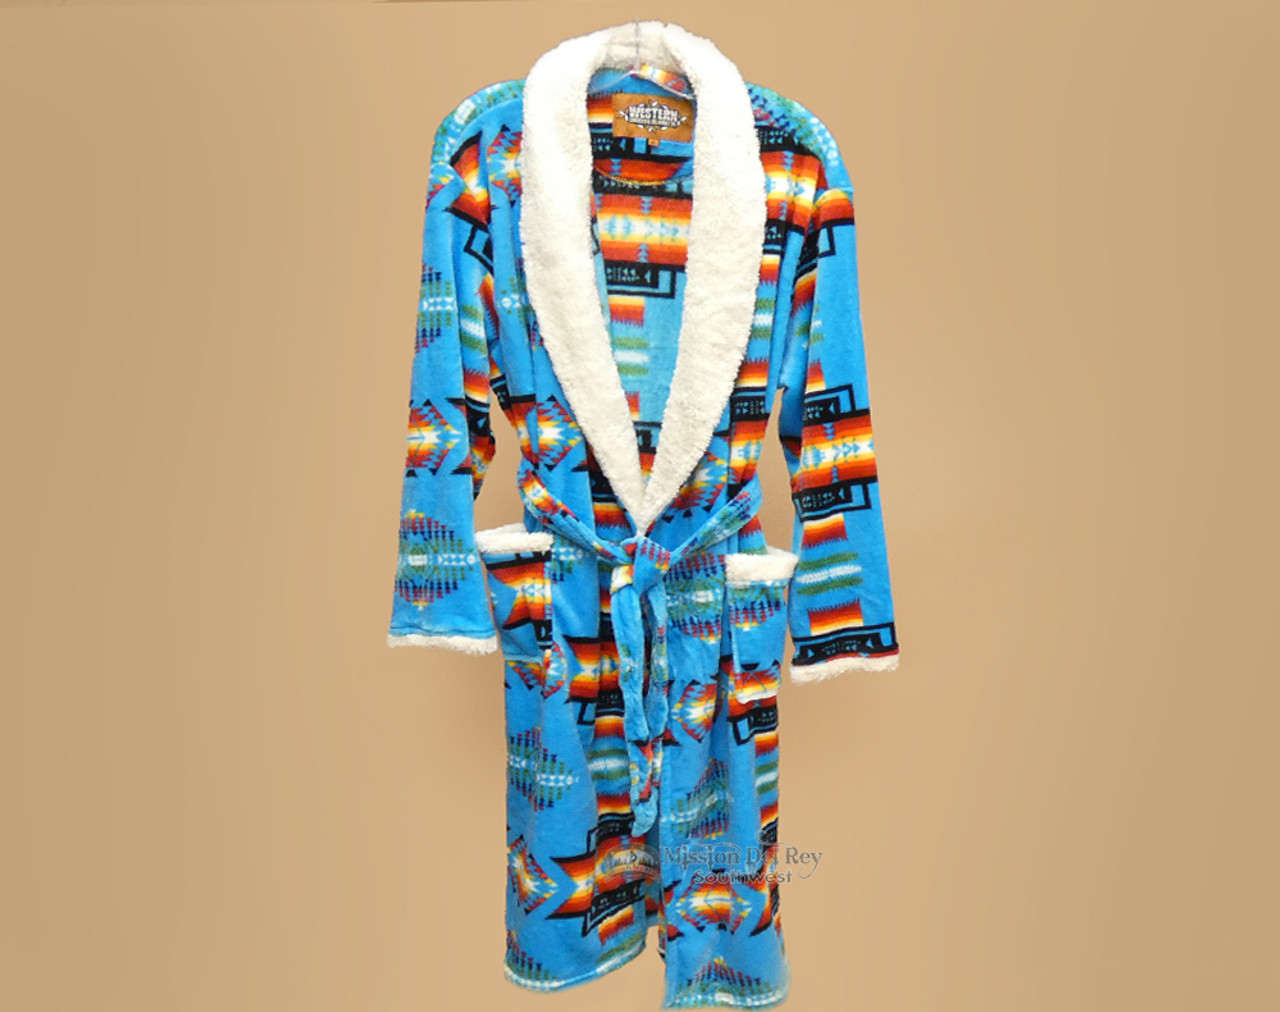 Luxury Style Southwestern Robe - Turquoise, Large - Mission Del Rey  Southwest